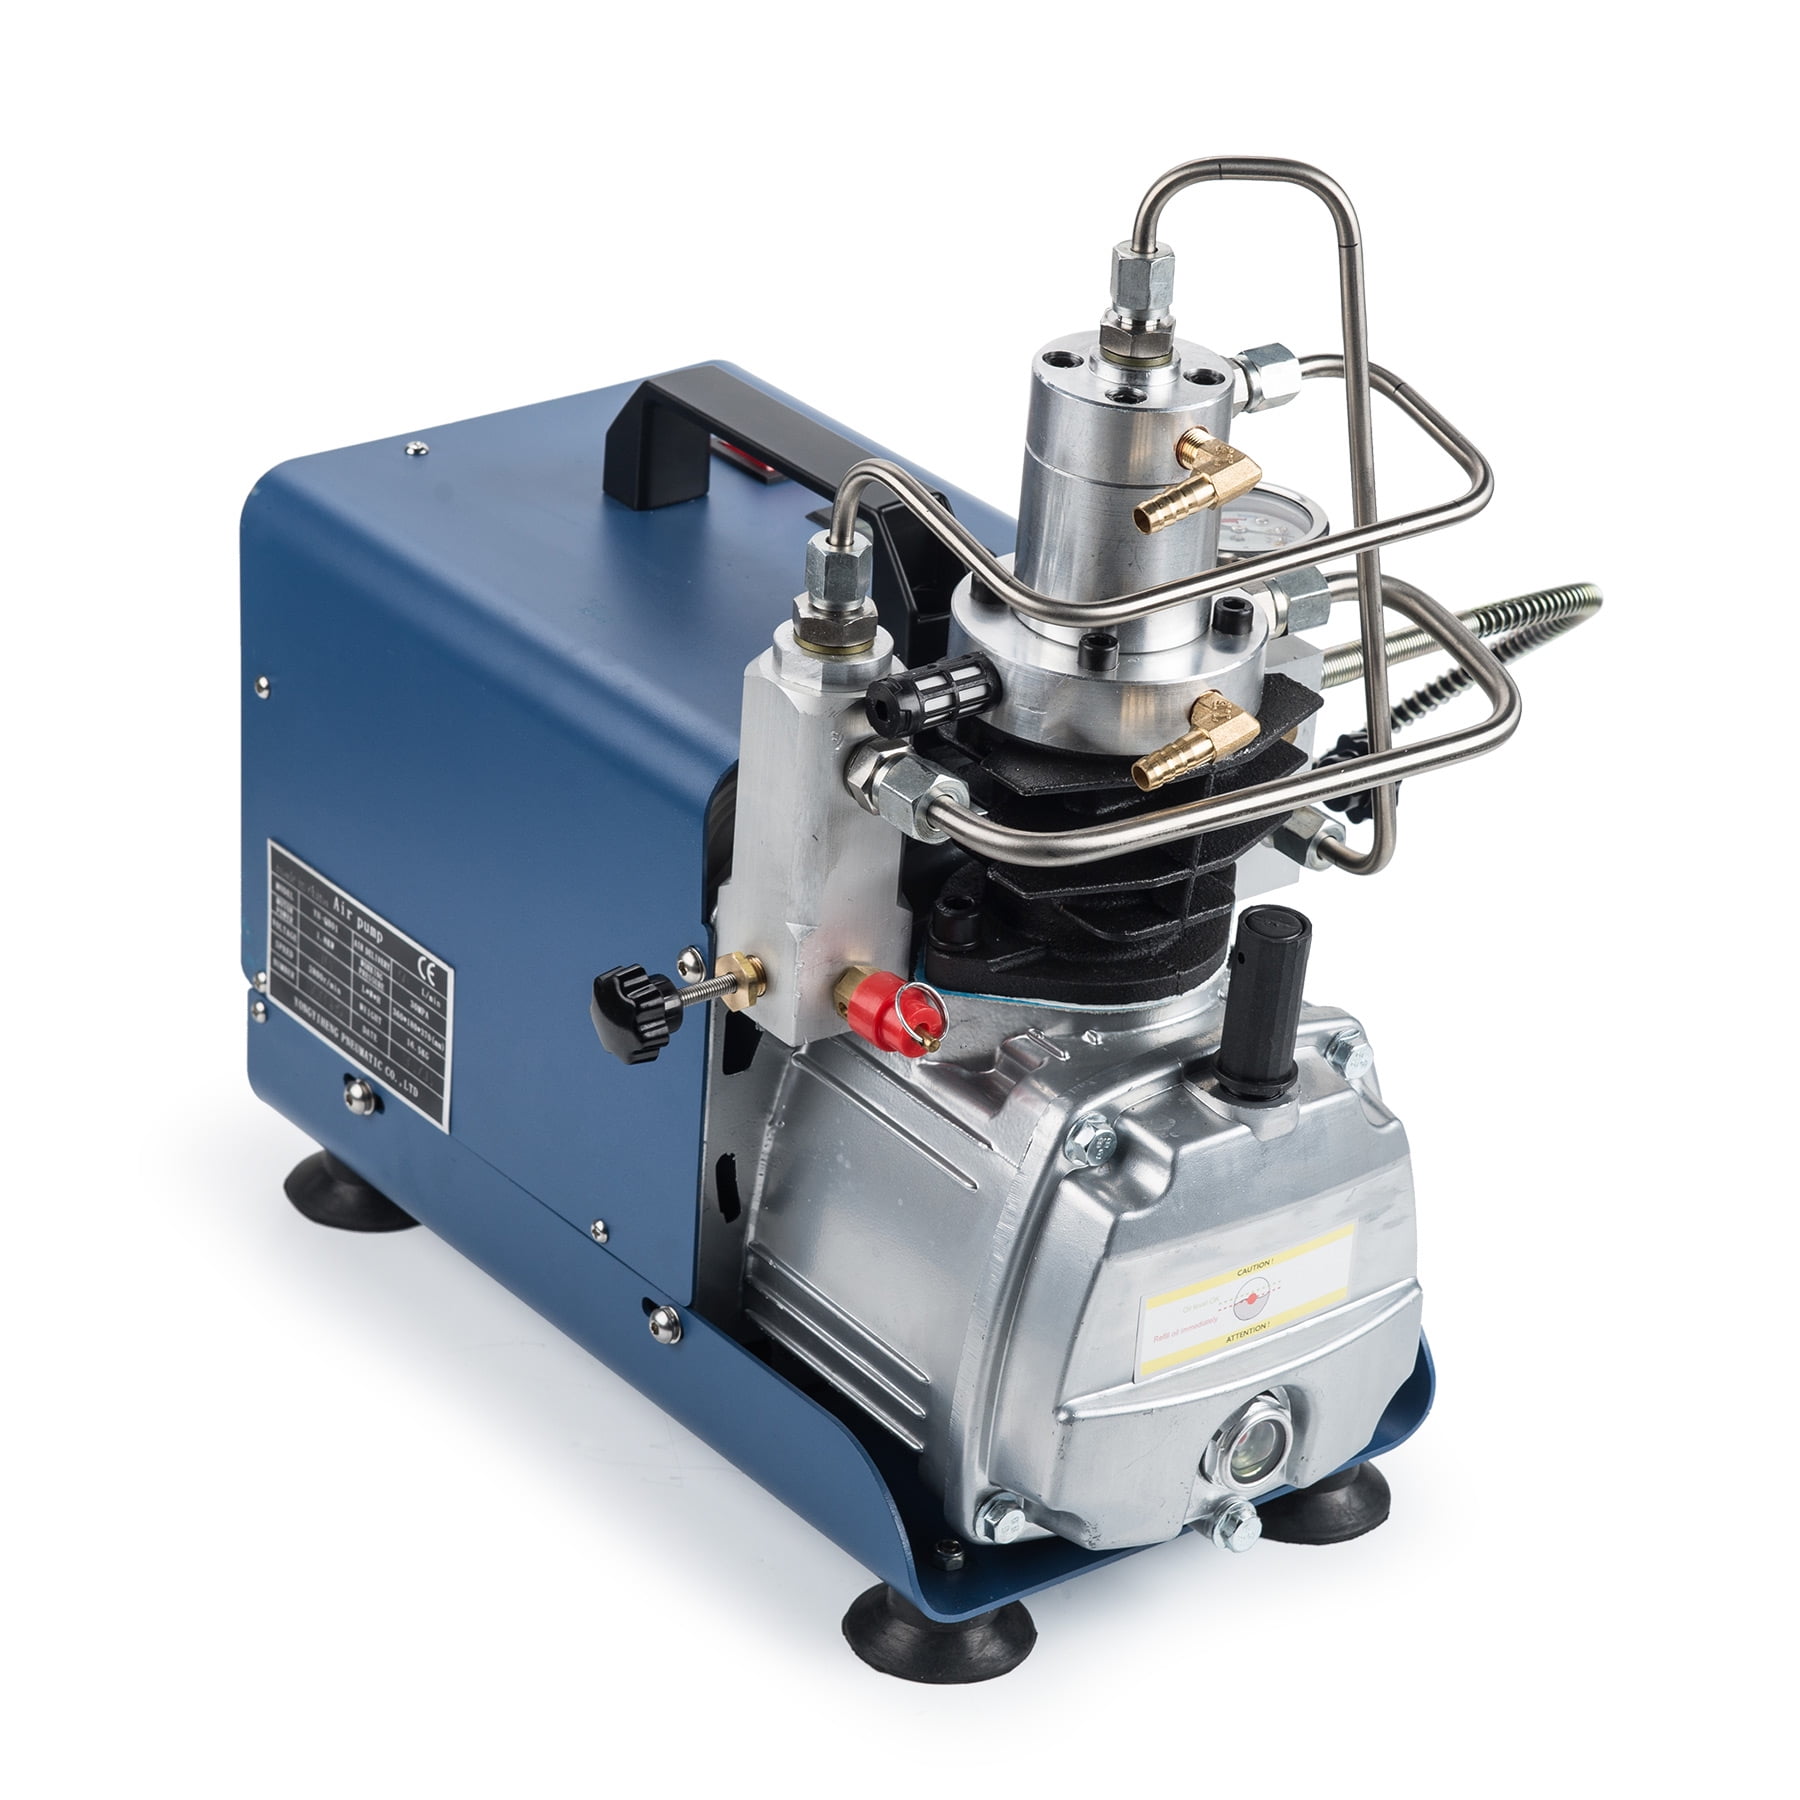 30MPa PCP Electric 4500PSI High Pressure Air Compressor Pump Can SET Pressure